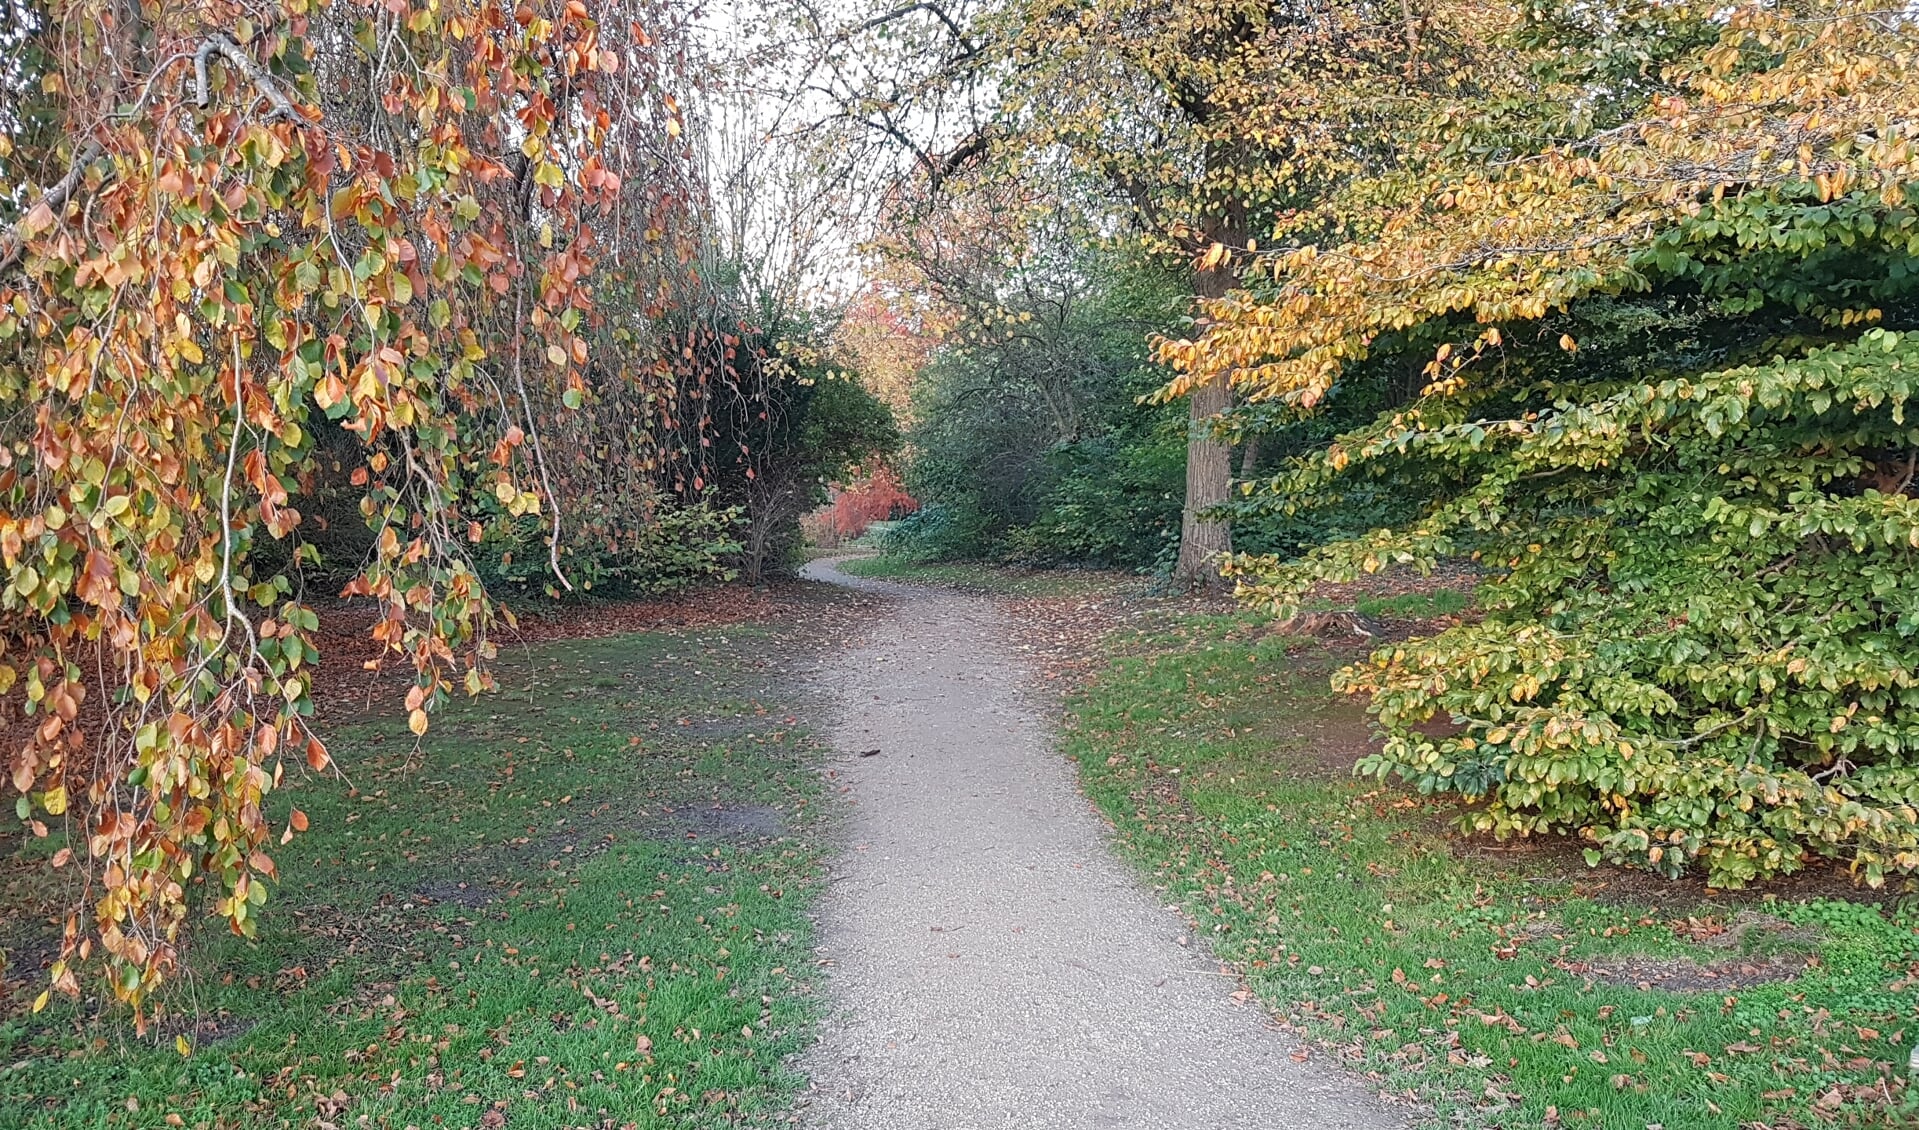 Romantische kronkelpaden in een herfstachtig Van Boetzelaerpark